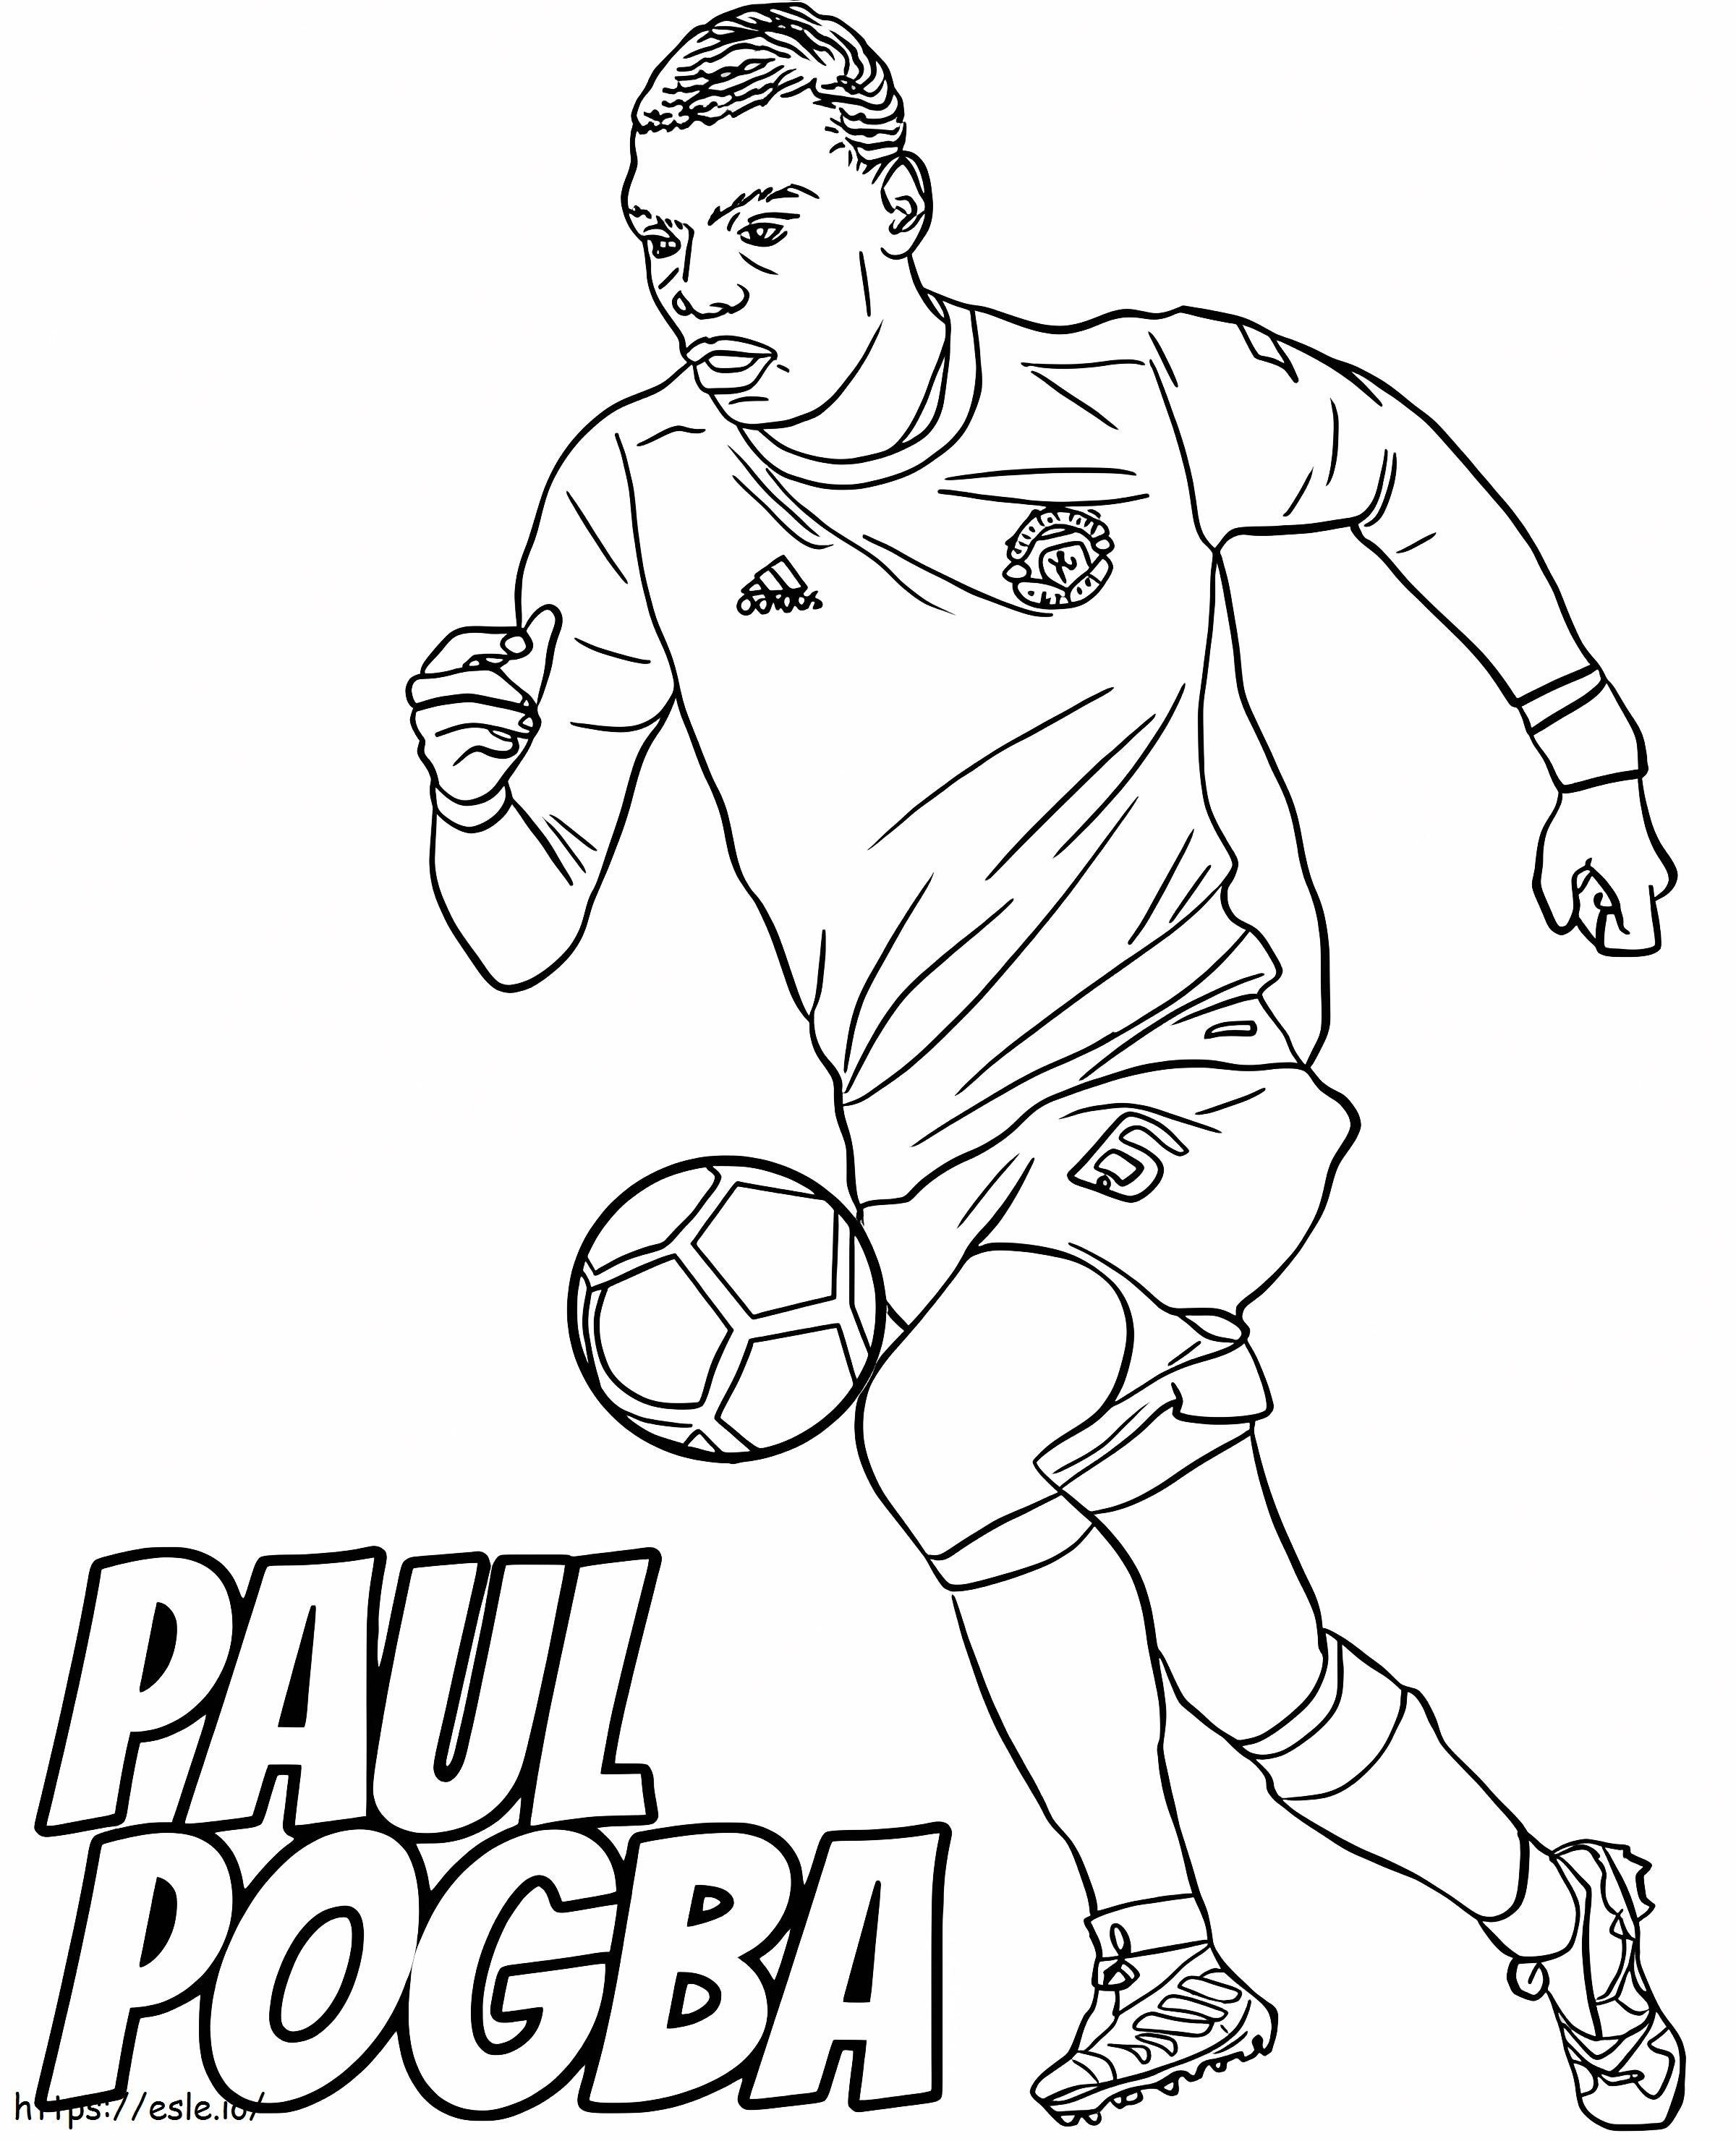 Paul Pogba sare mingea de colorat